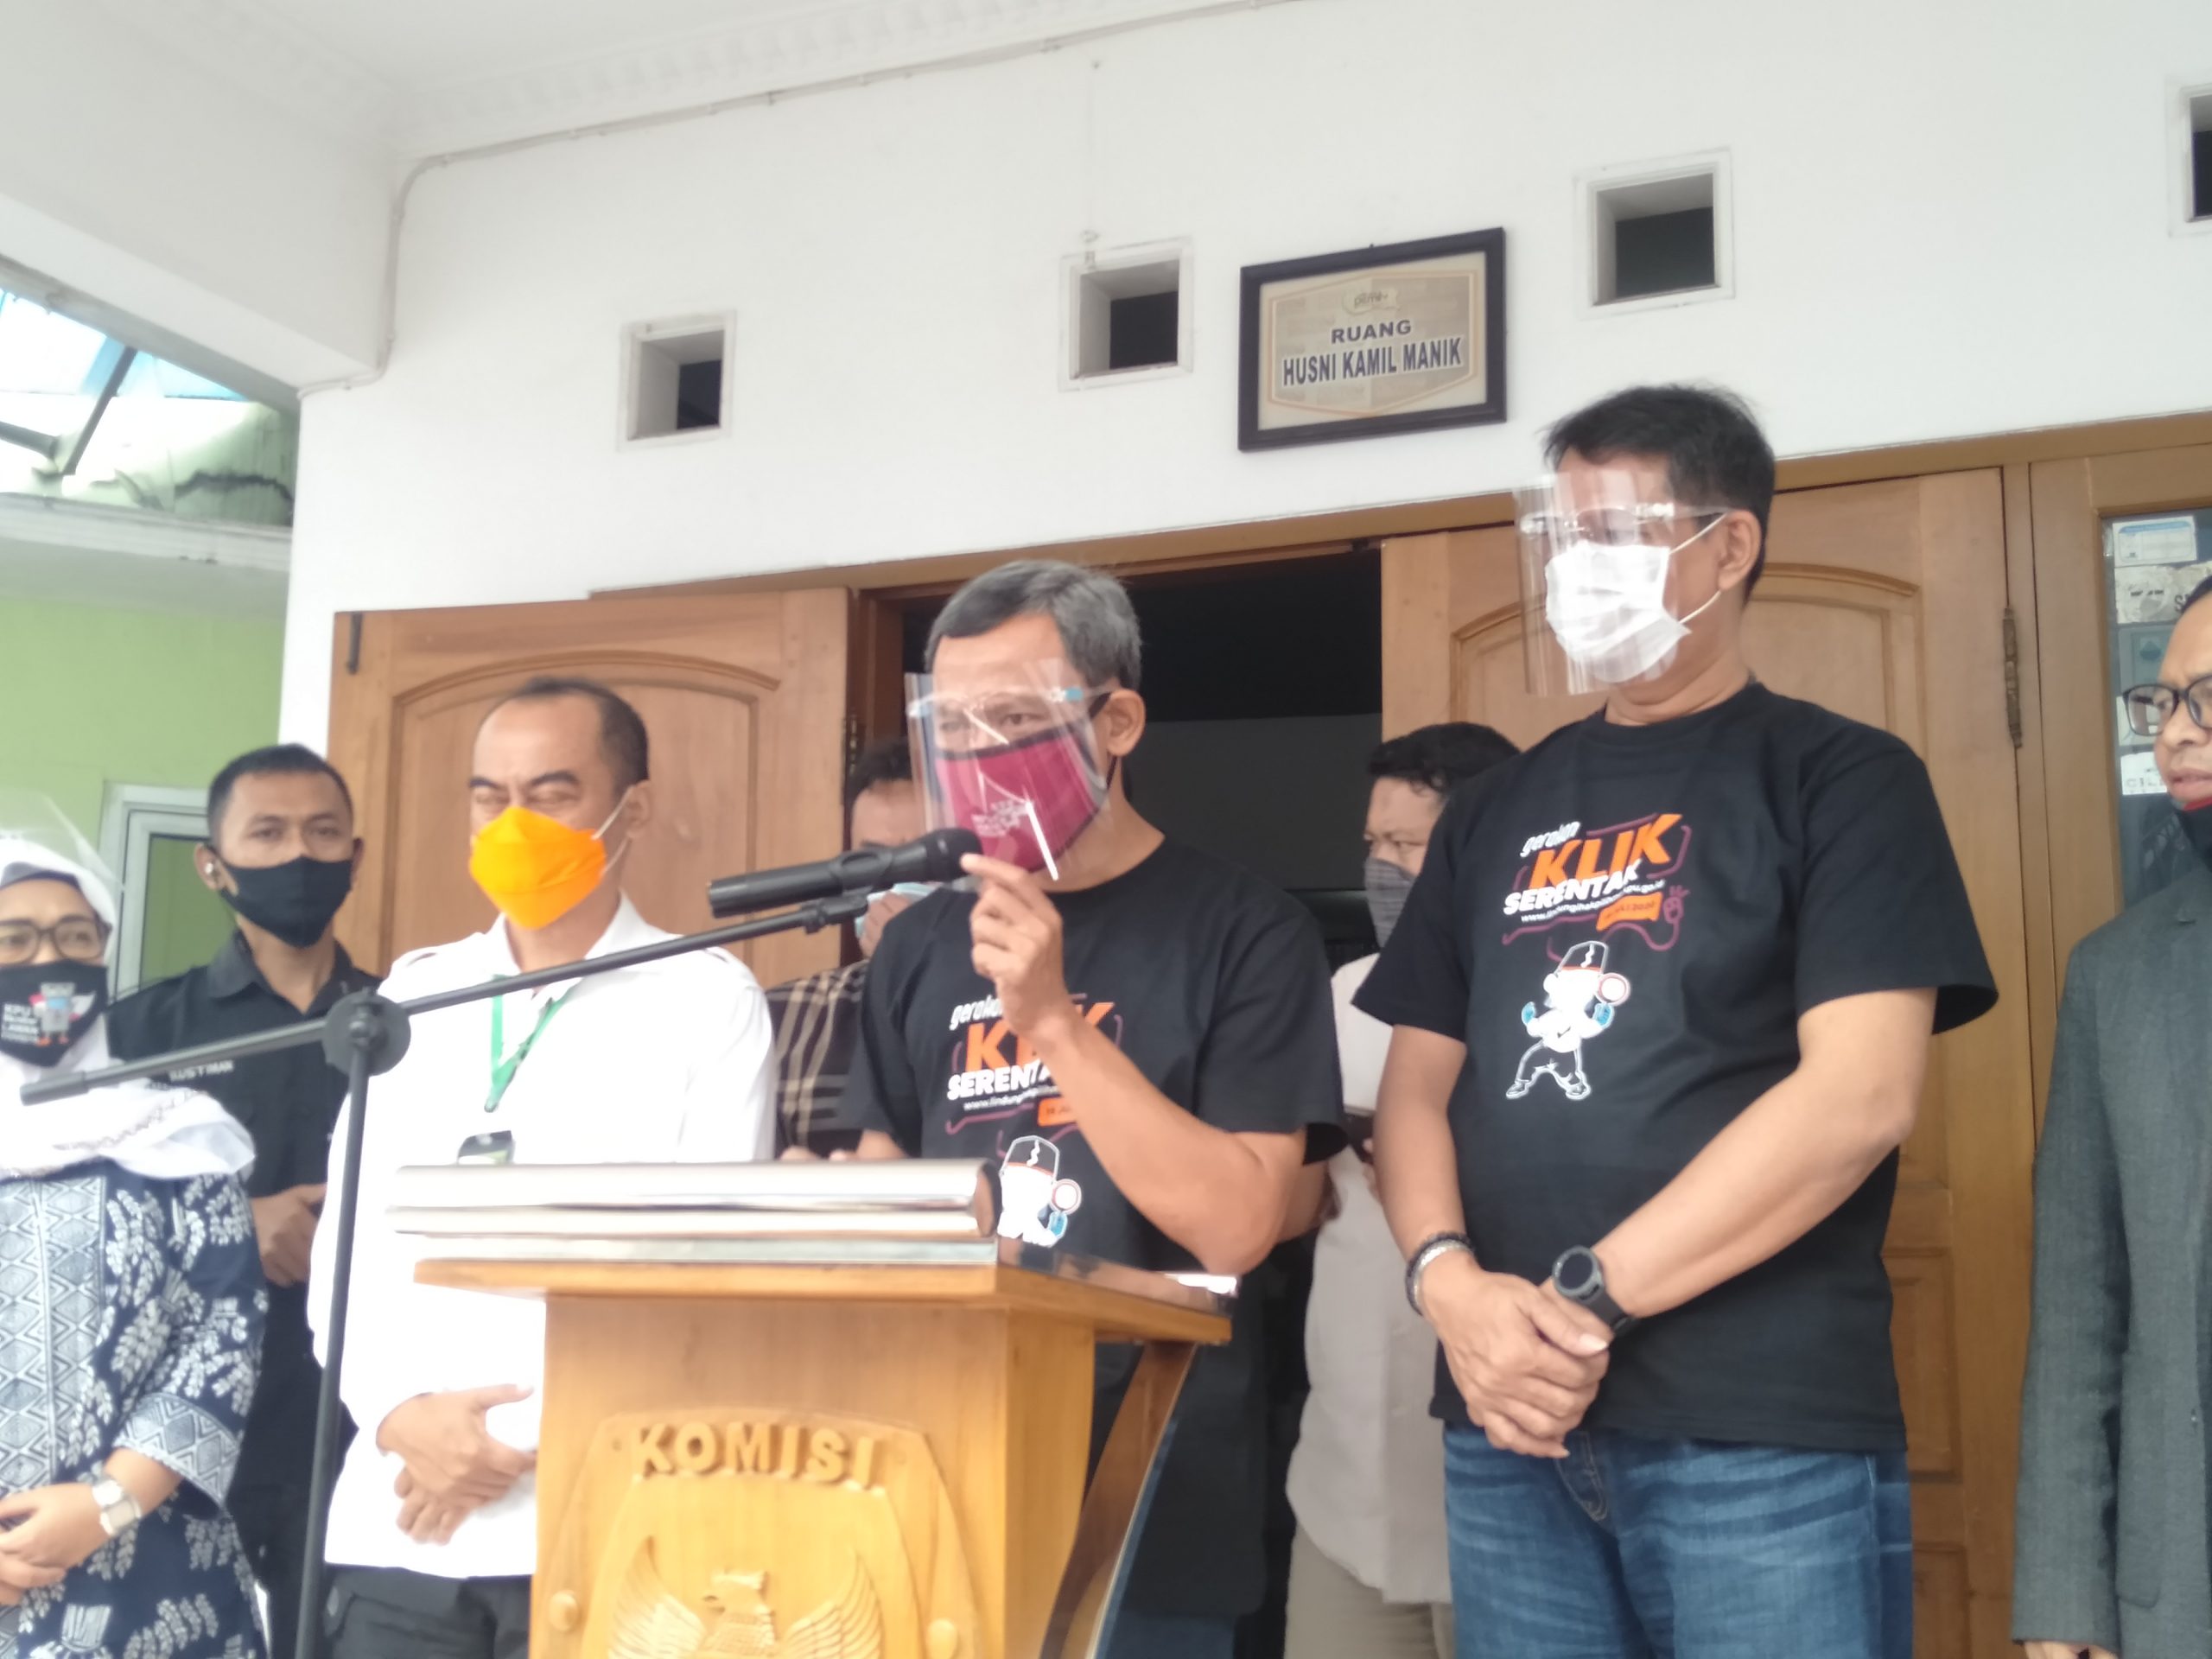 Partisipasi Pilkada 2020 Dikhawatirkan Turun, Pramono: Tidak Betul